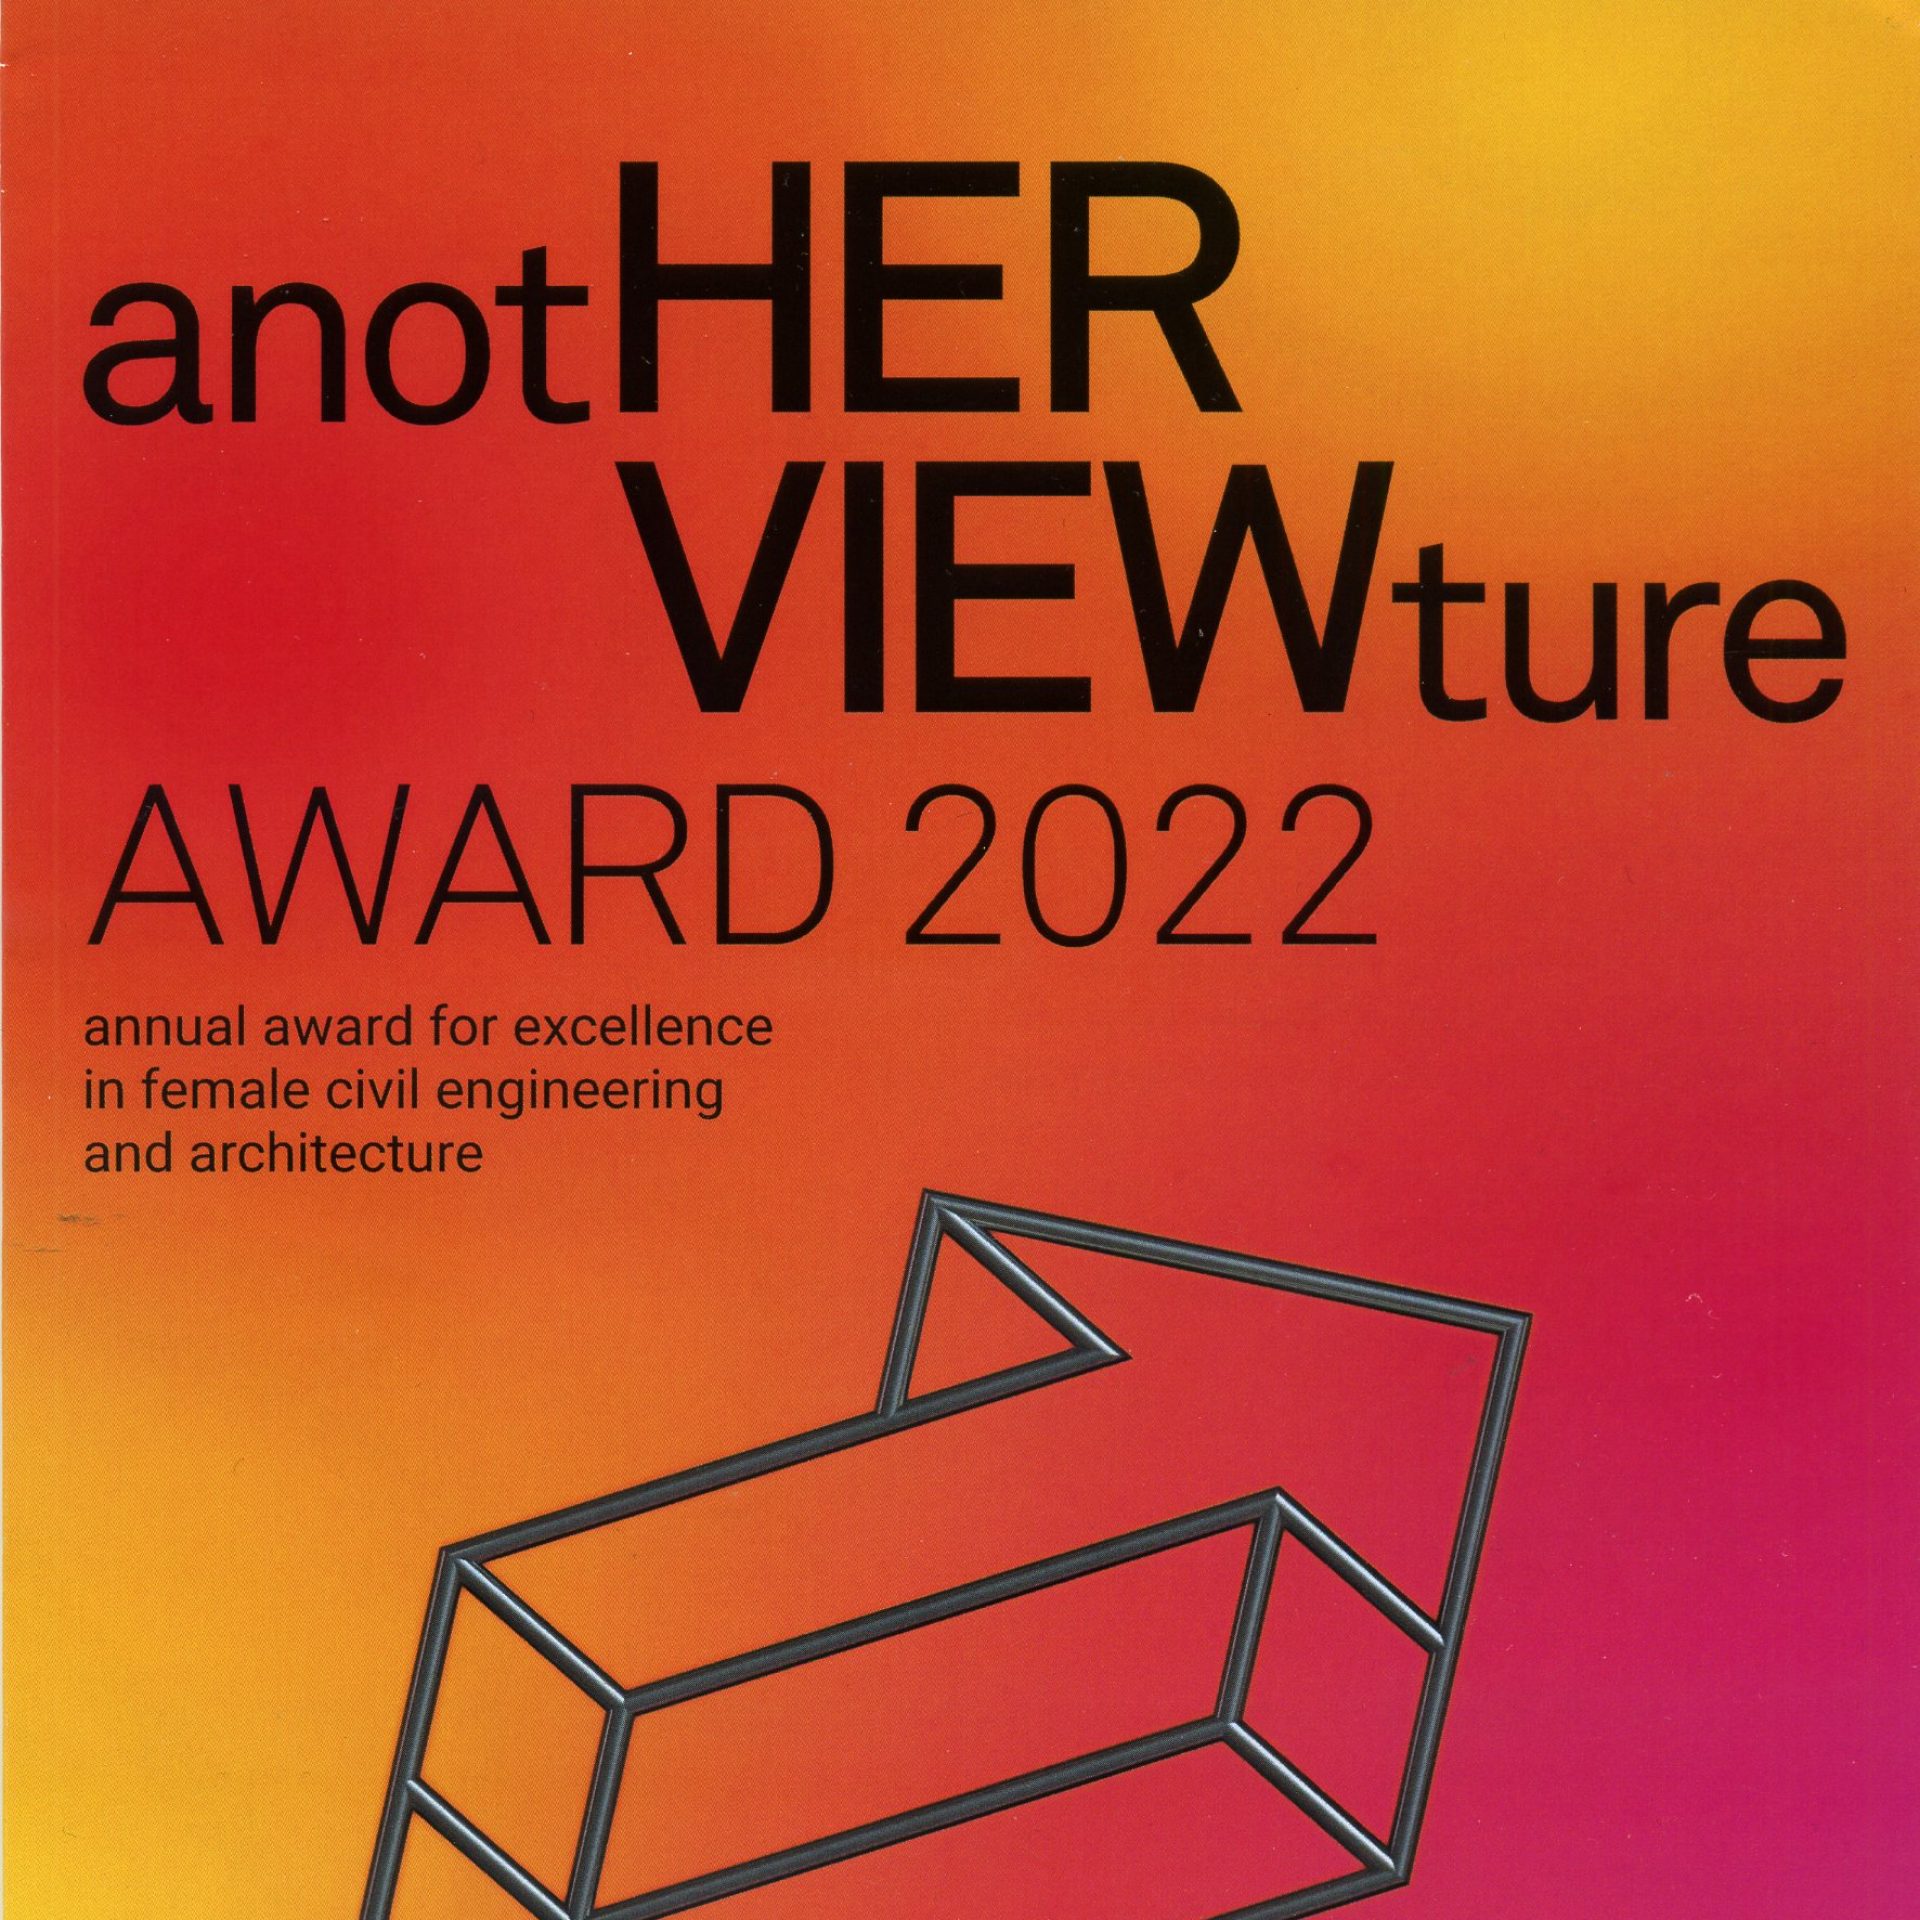  AnotHERVIEWture nagrada za arhitektke